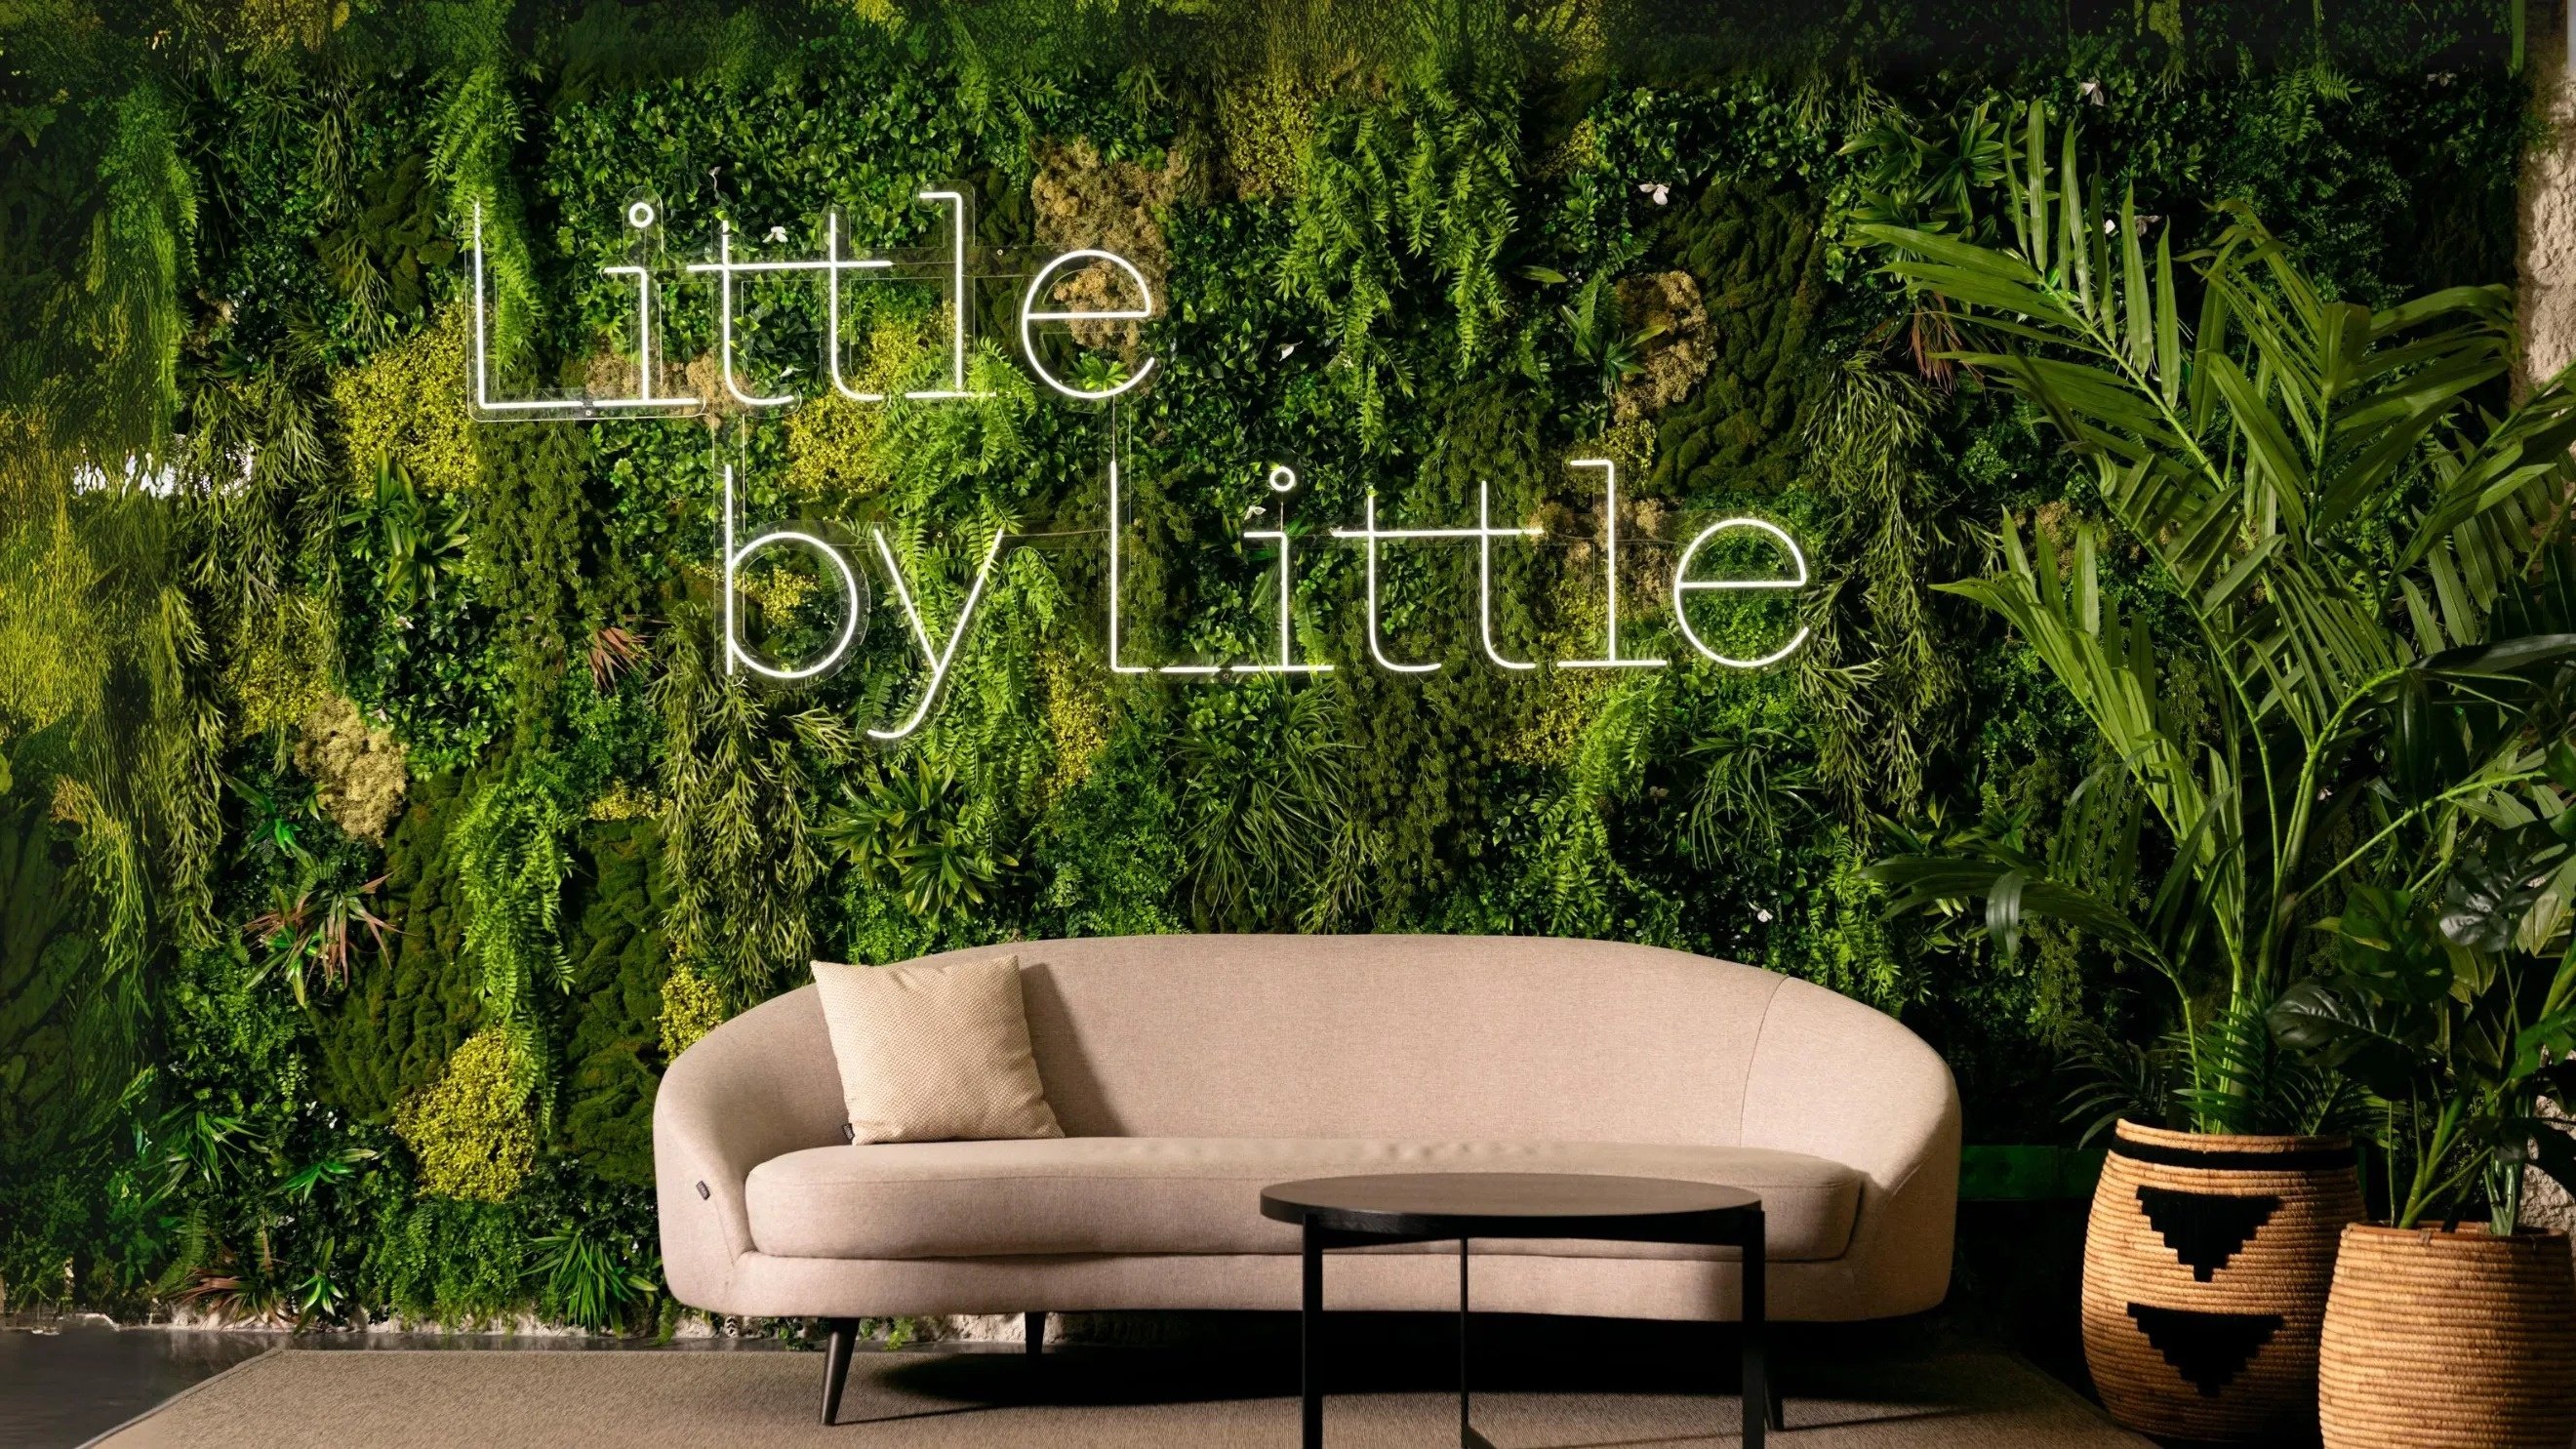 ein Wohnzimmer mit einer Couch und einem Tisch und einer Wand mit der Aufschrift " little by little "